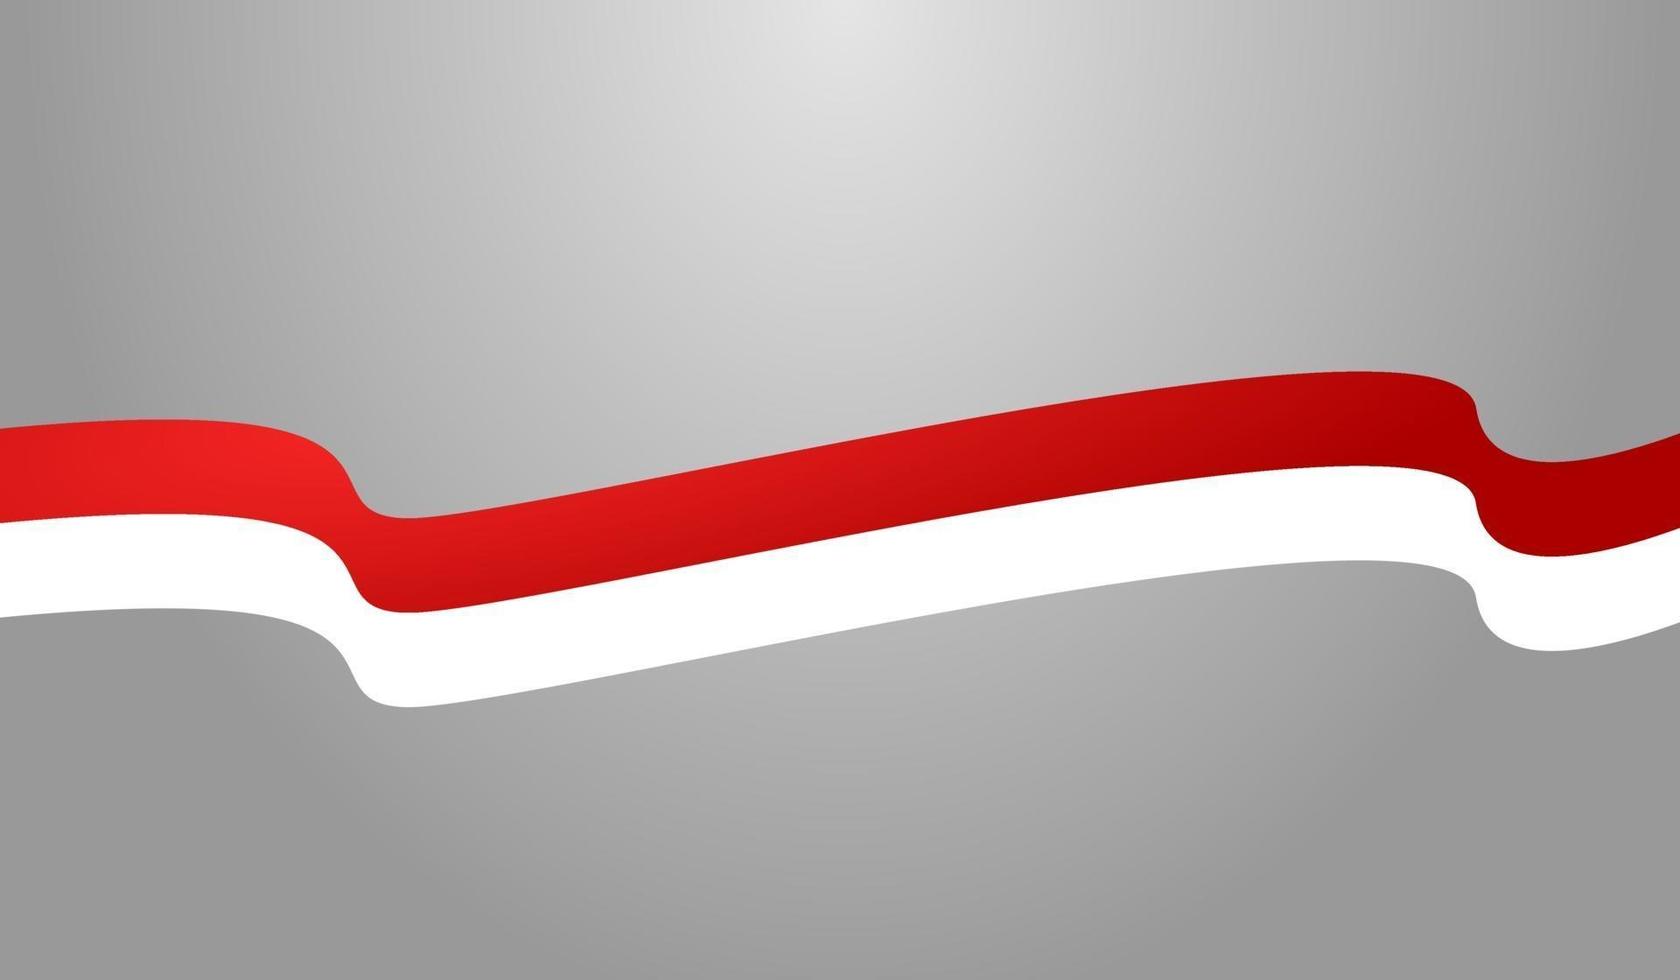 bandeira da indonésia elemento onda onda vermelho branco vetor